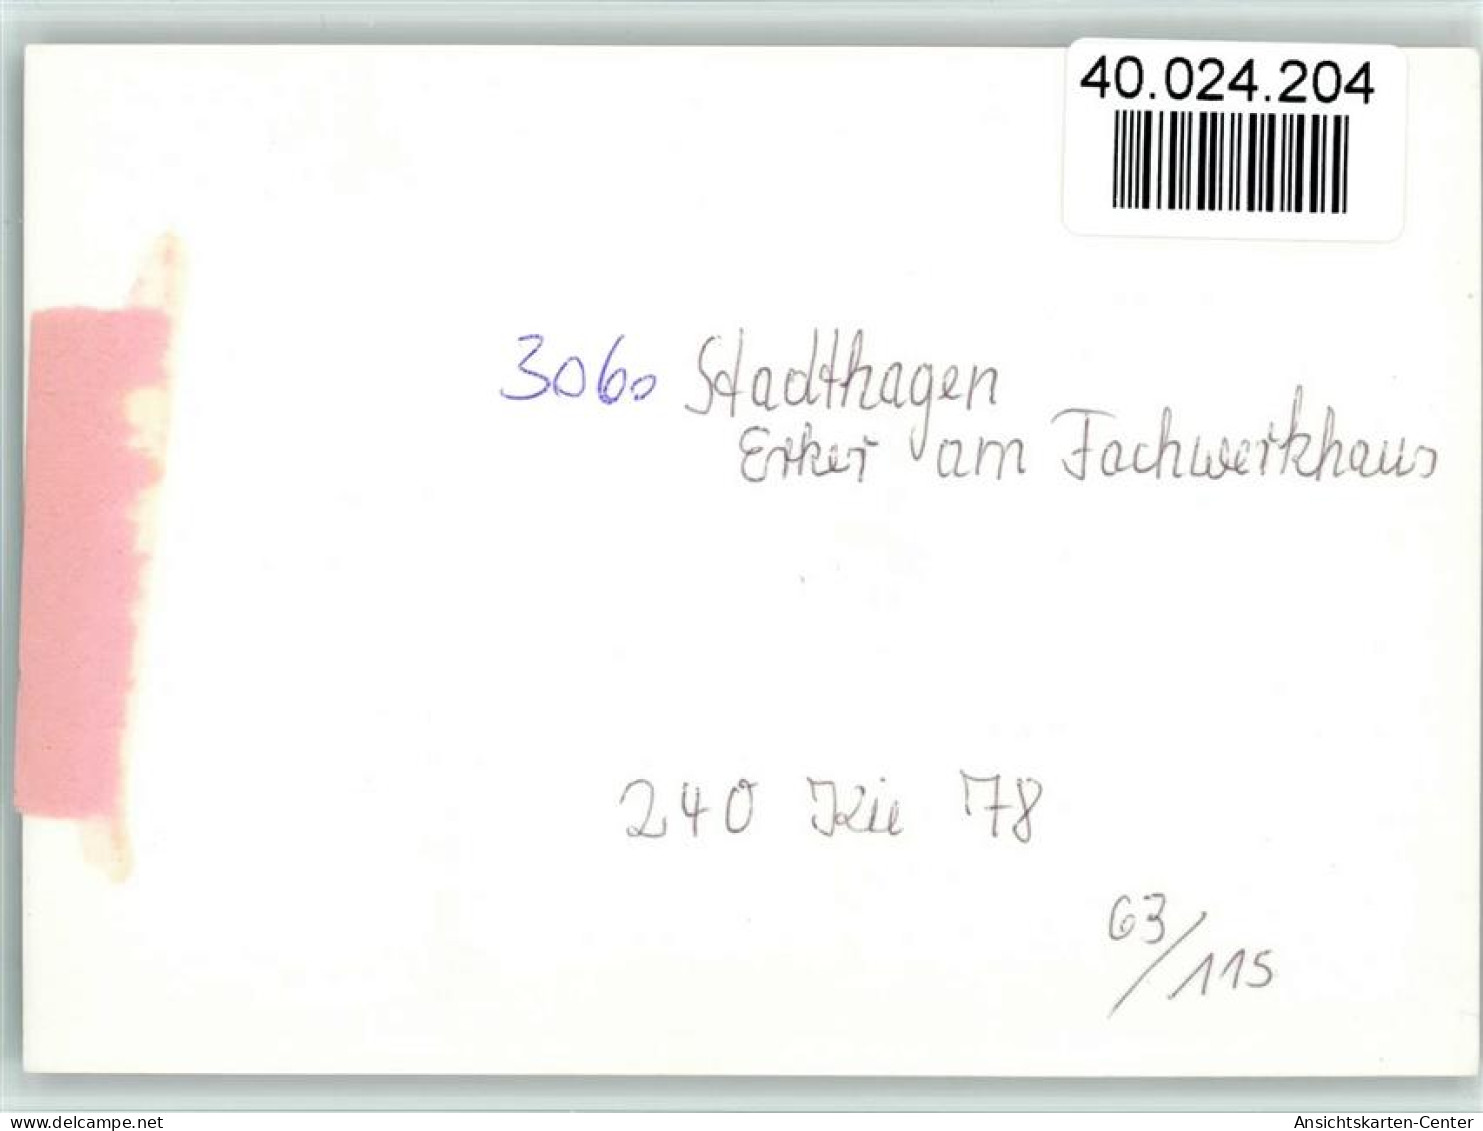 40024204 - Stadthagen - Stadthagen